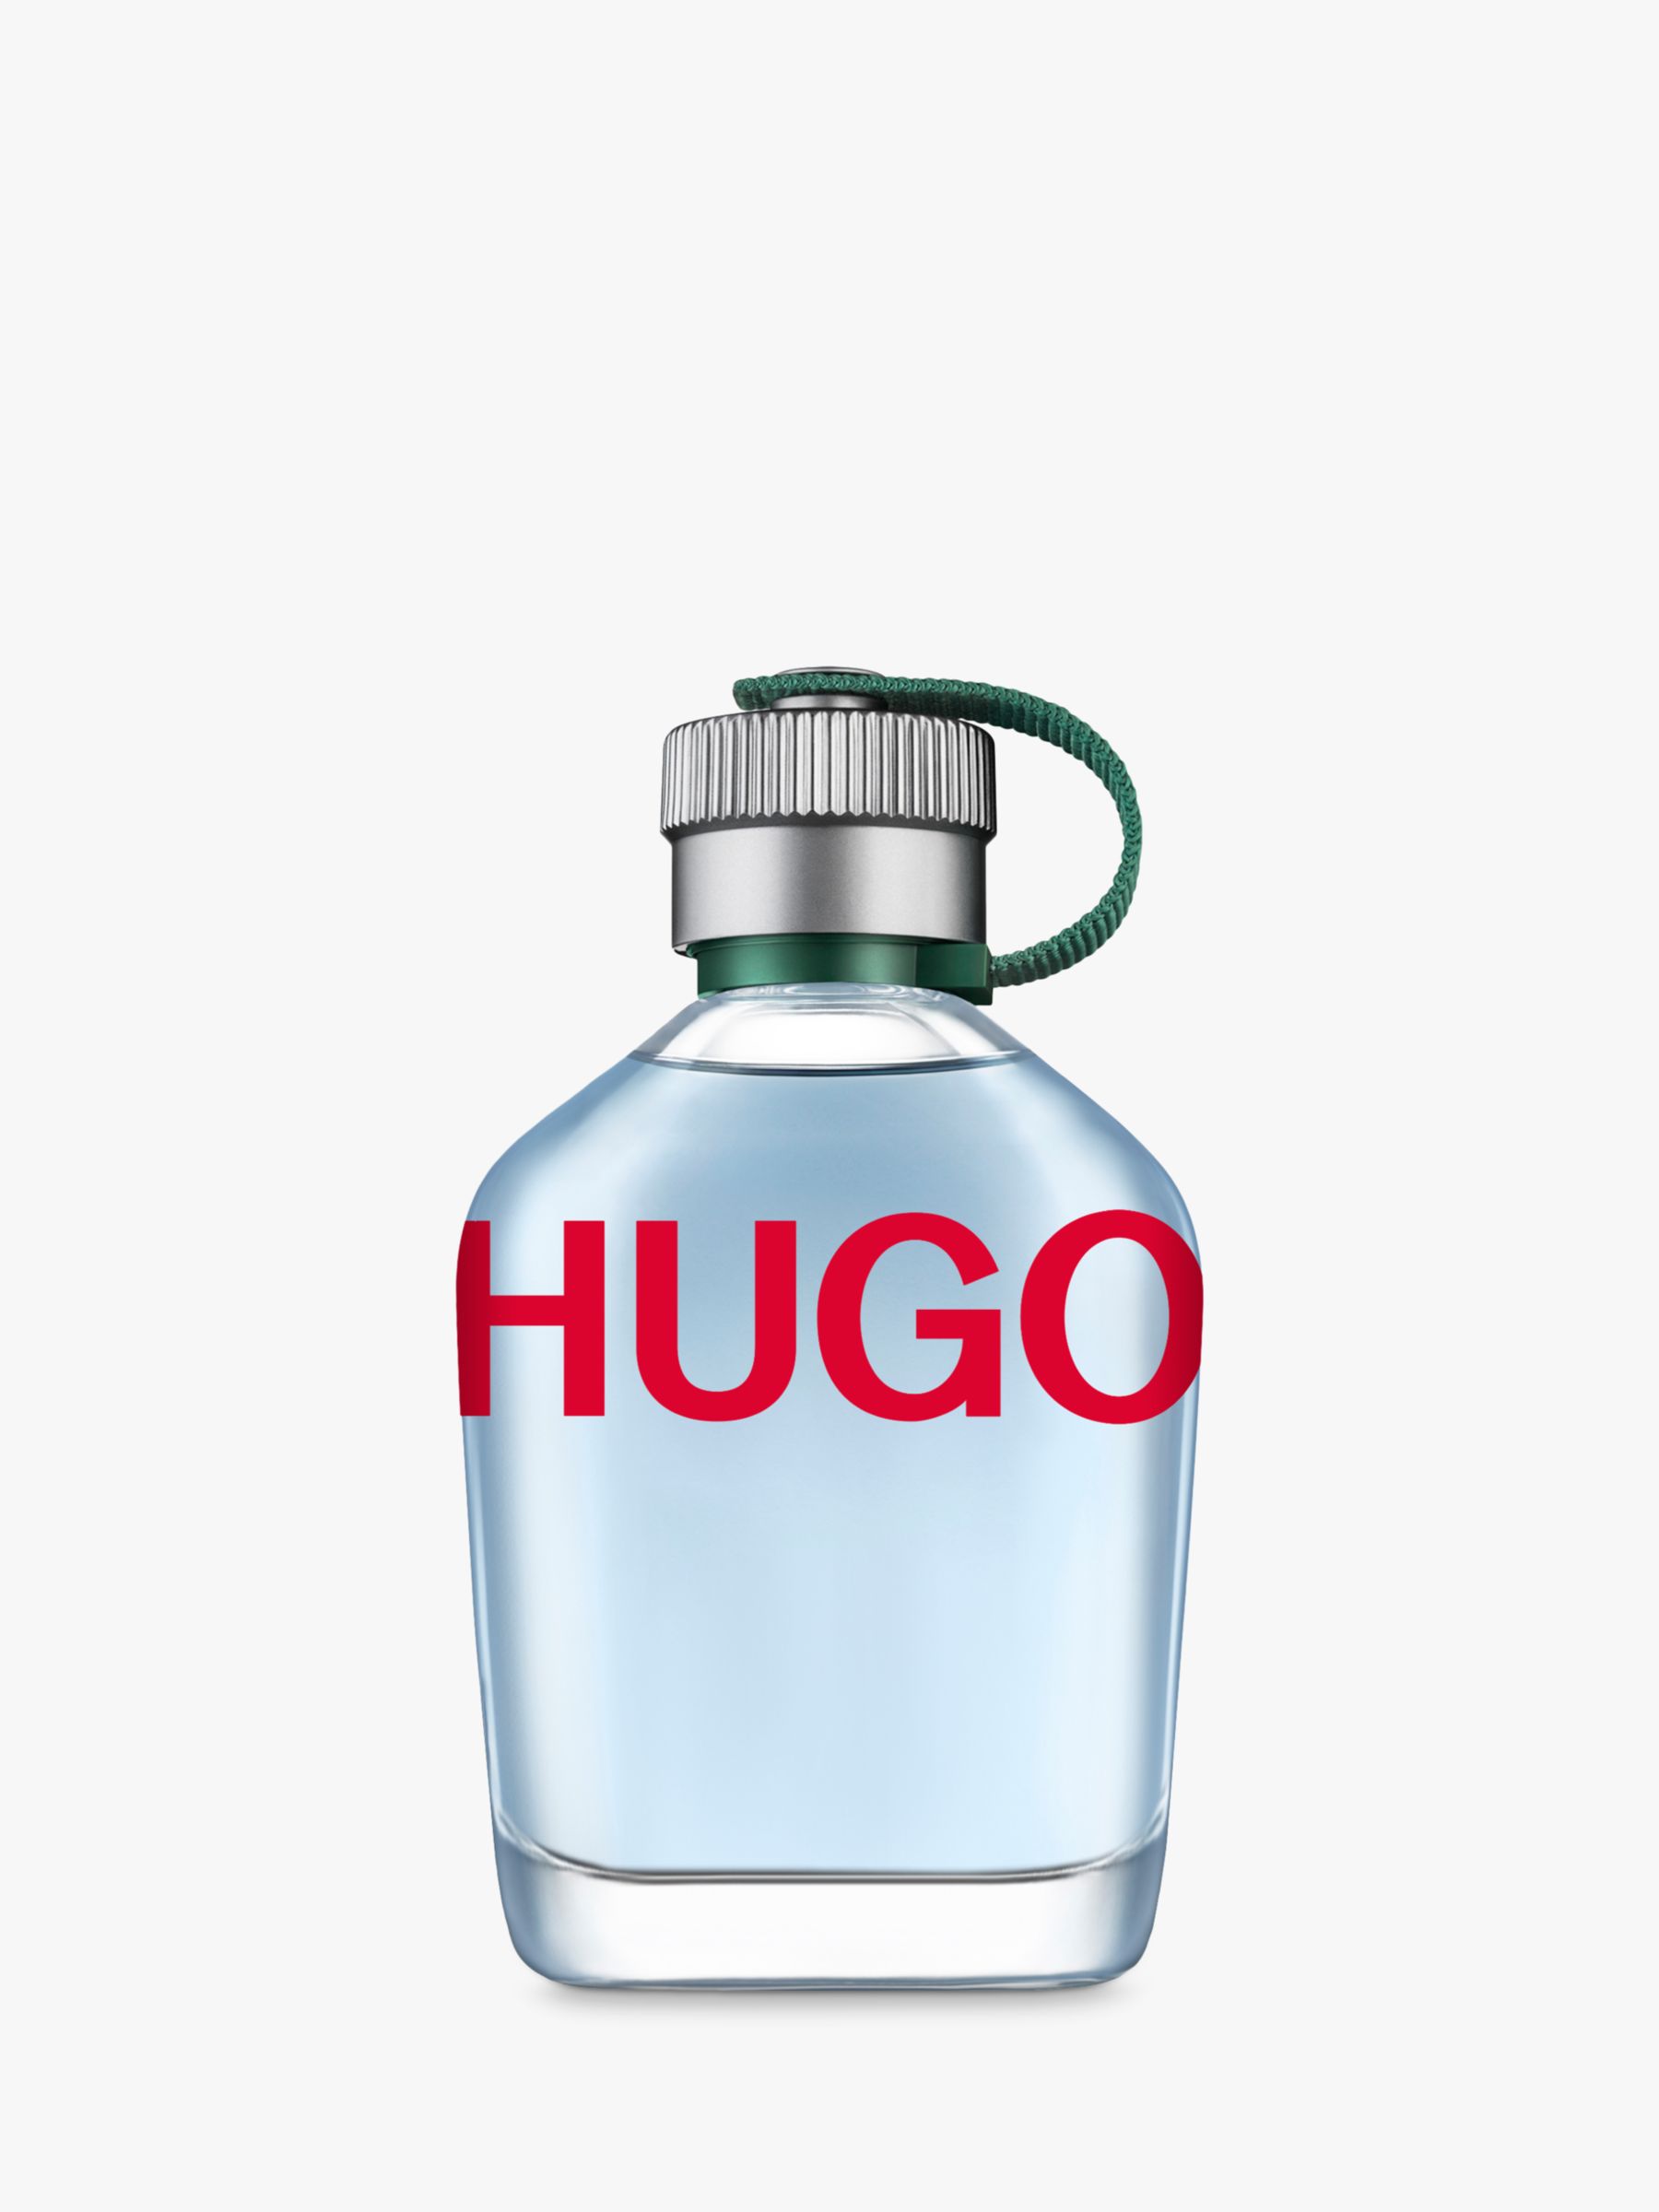 hugo boss men's perfume 125ml